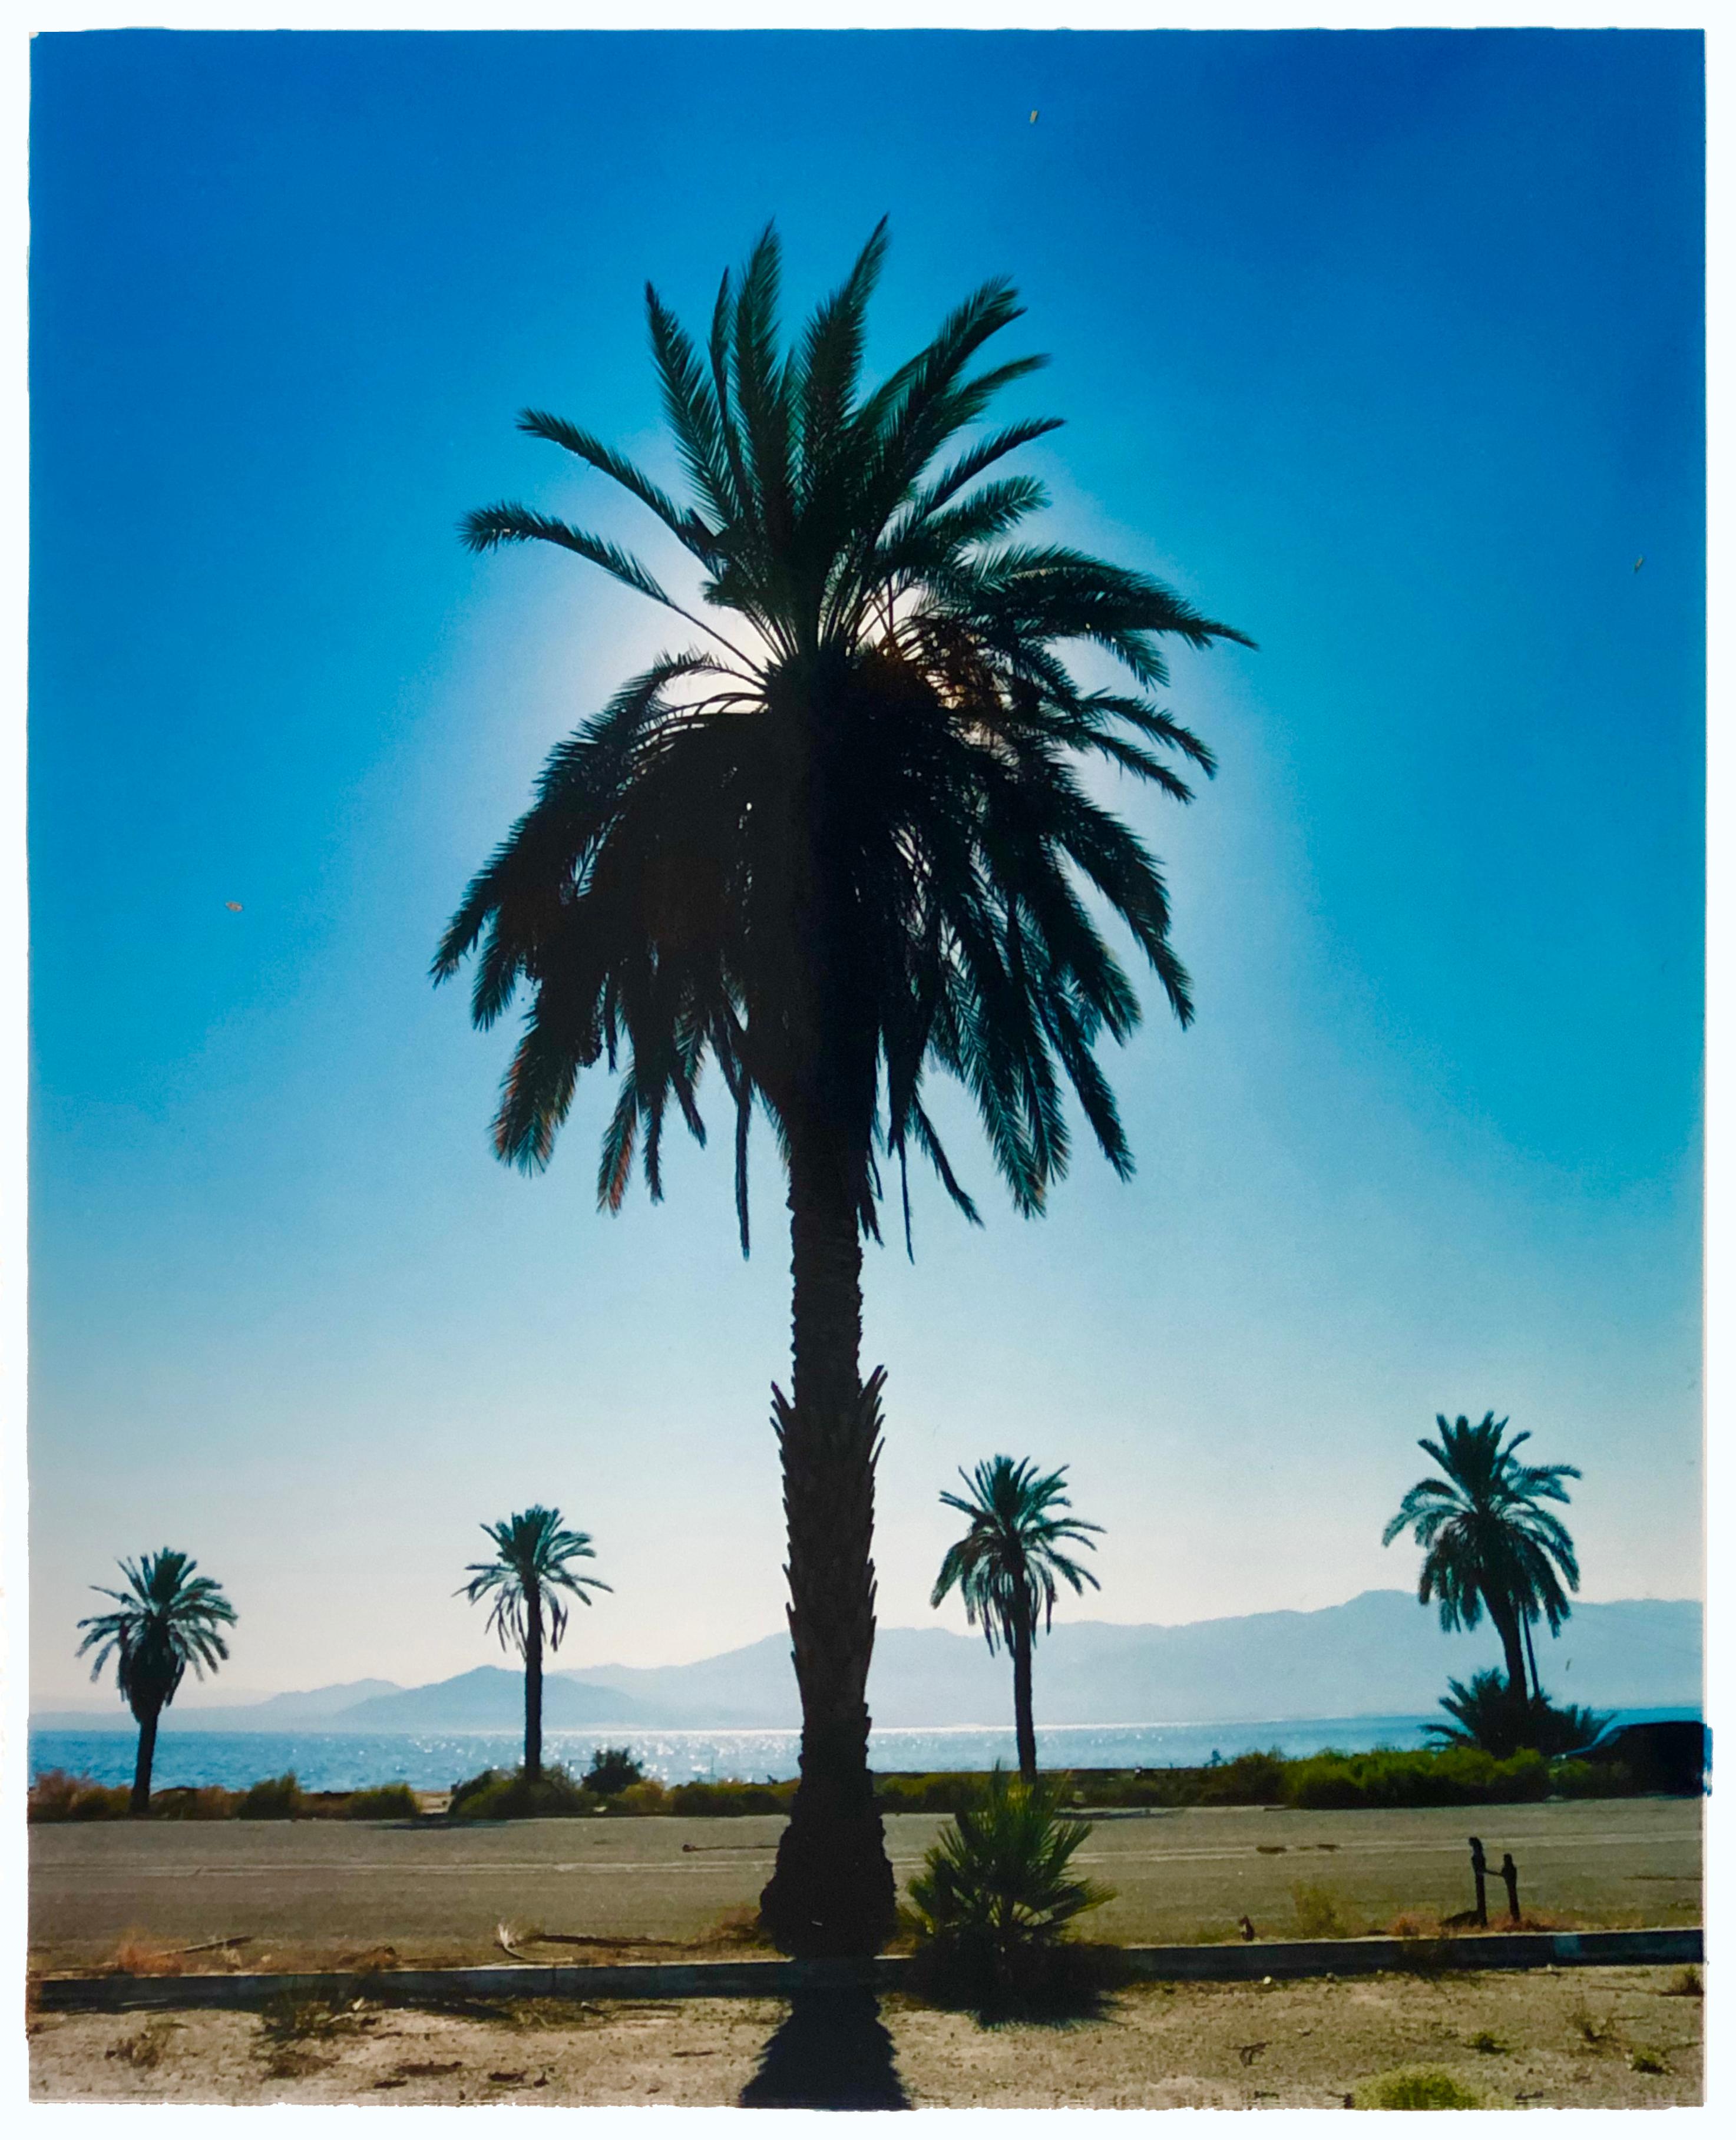 Palmier, mer de Salton, Californie - photo couleur imprimée de palmier bleu